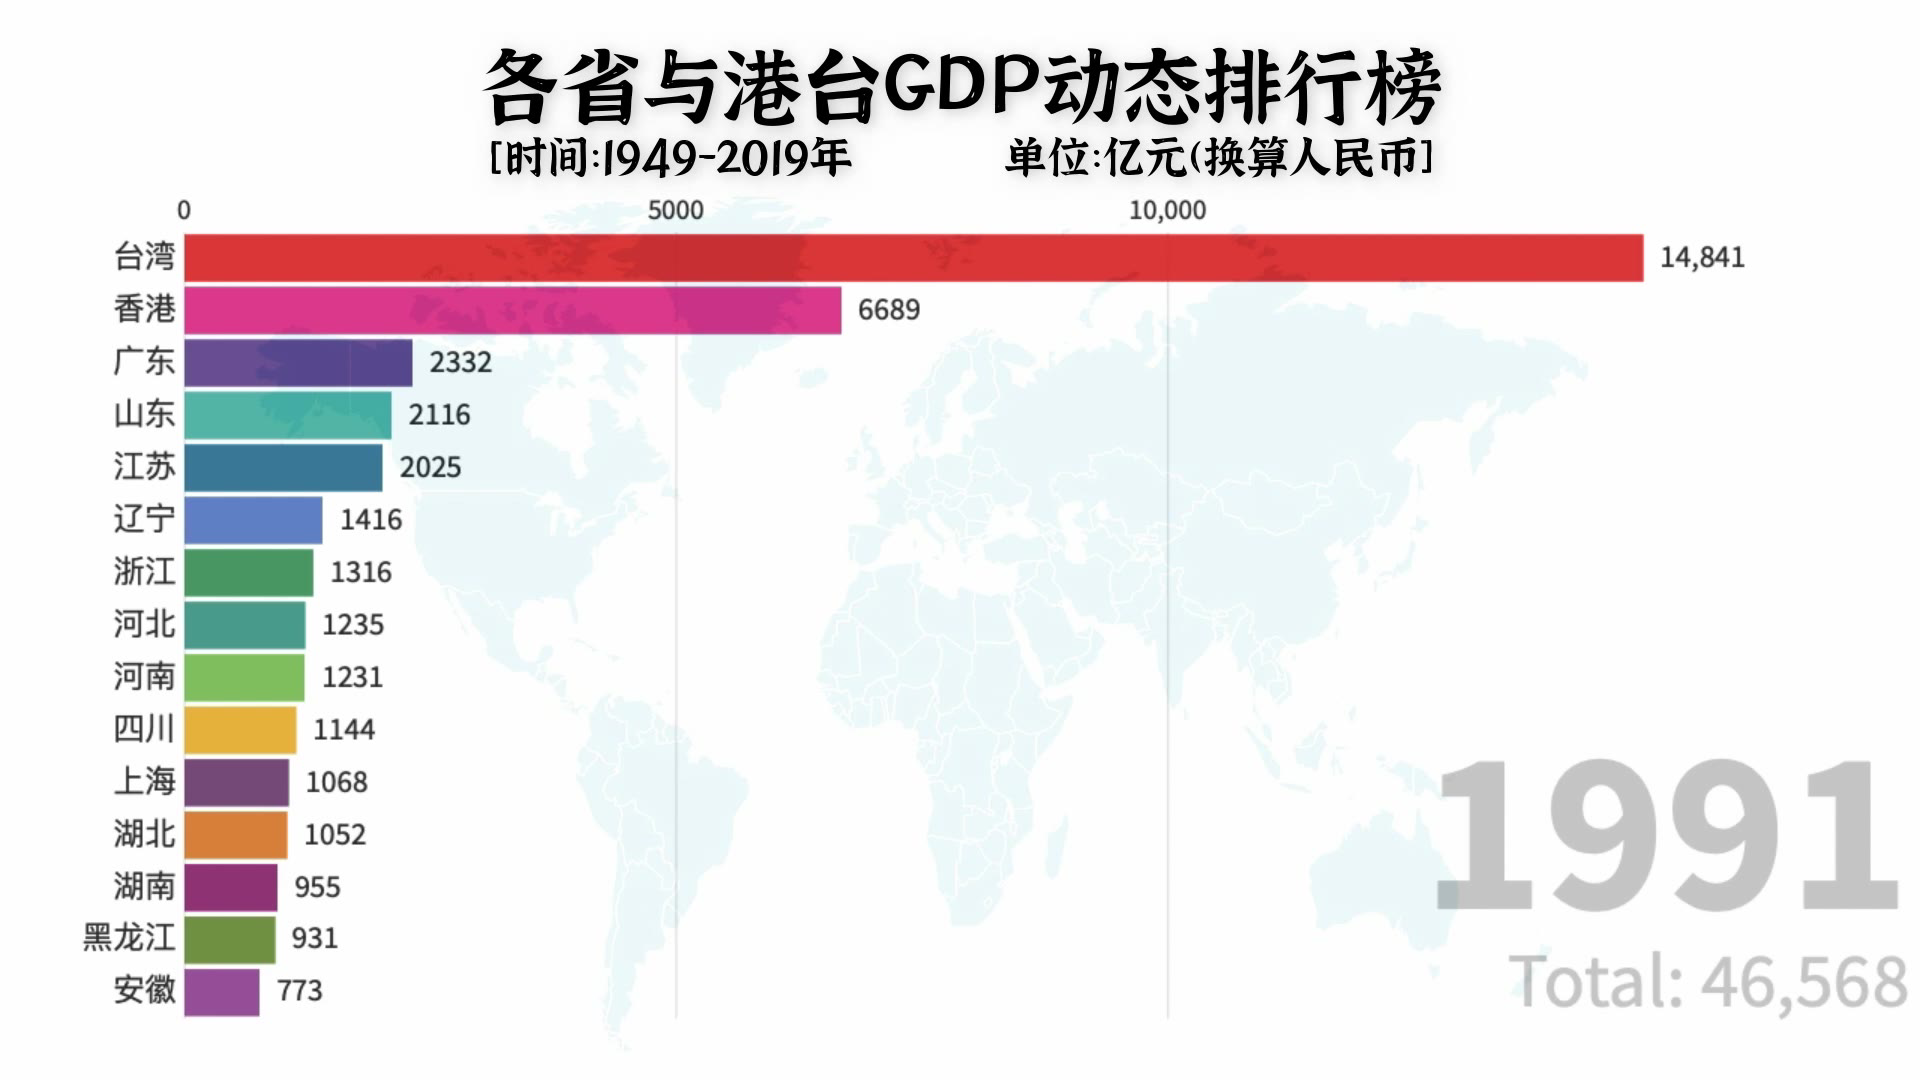 曾经台湾gdp是大陆的45%,现在